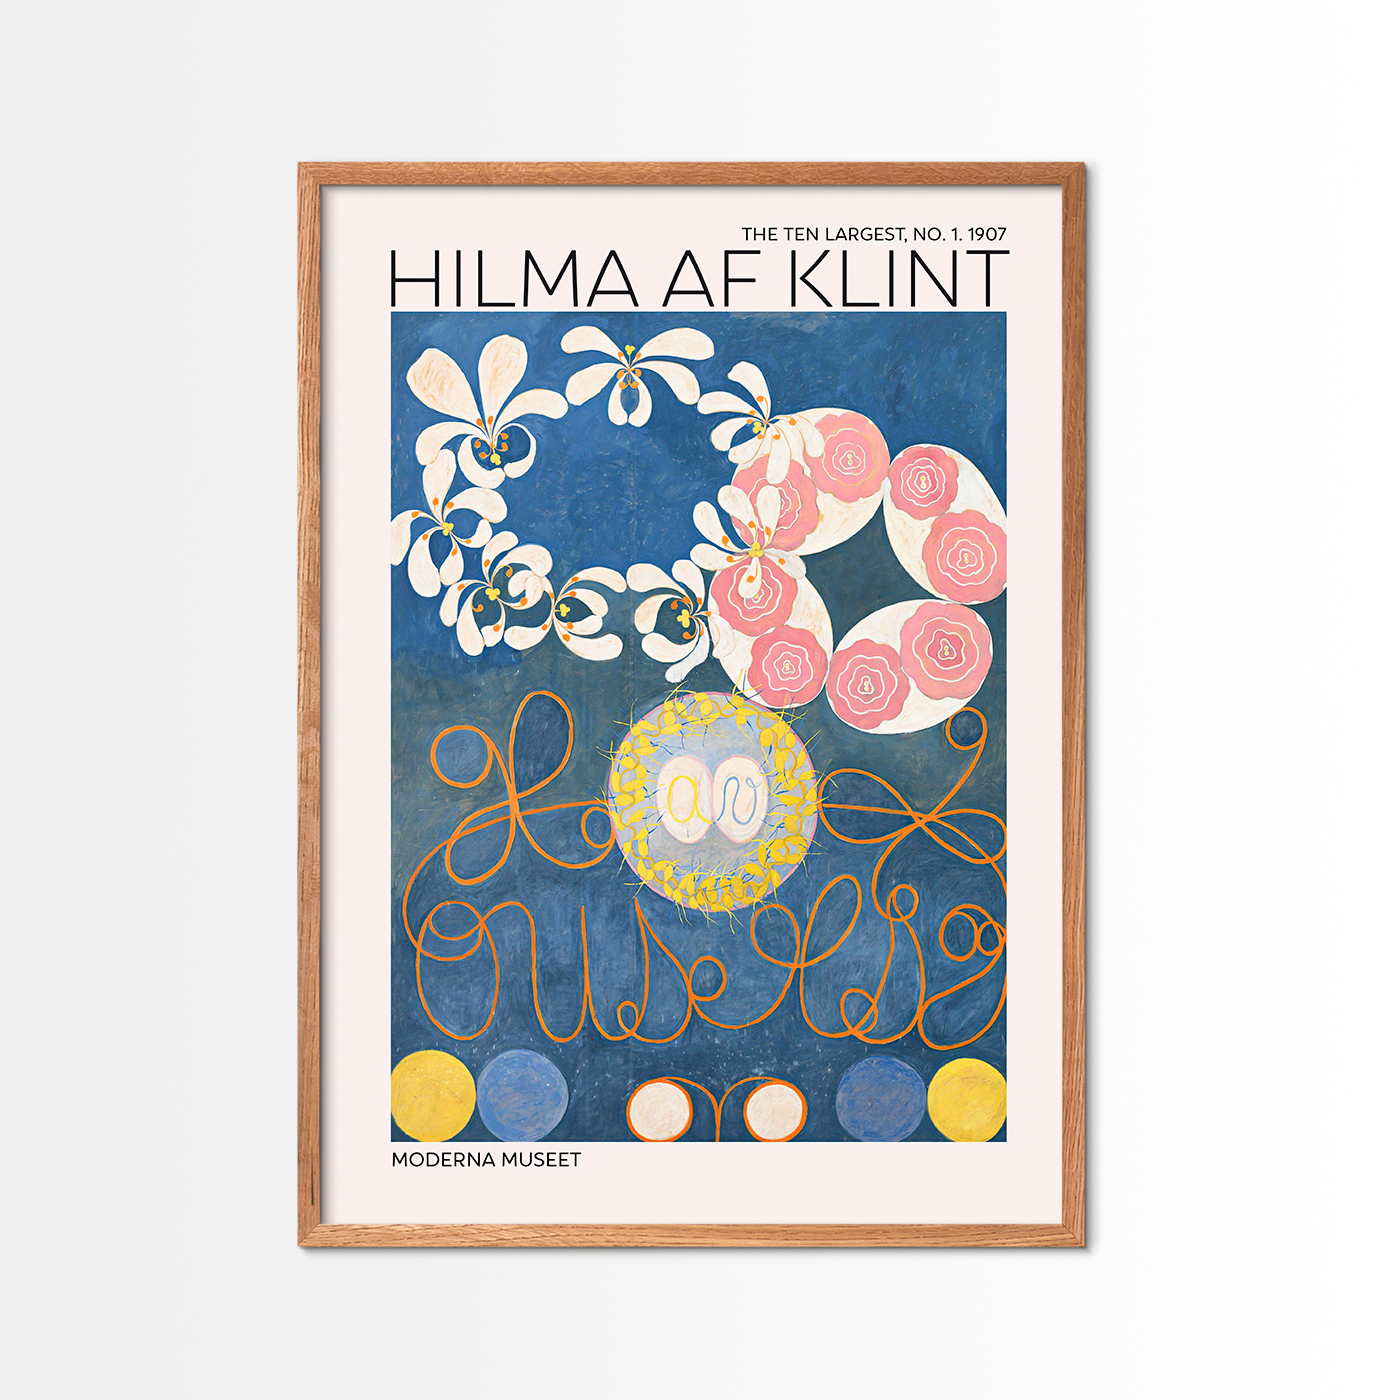 The Ten Largest No. 1 - Hilma Of Klint